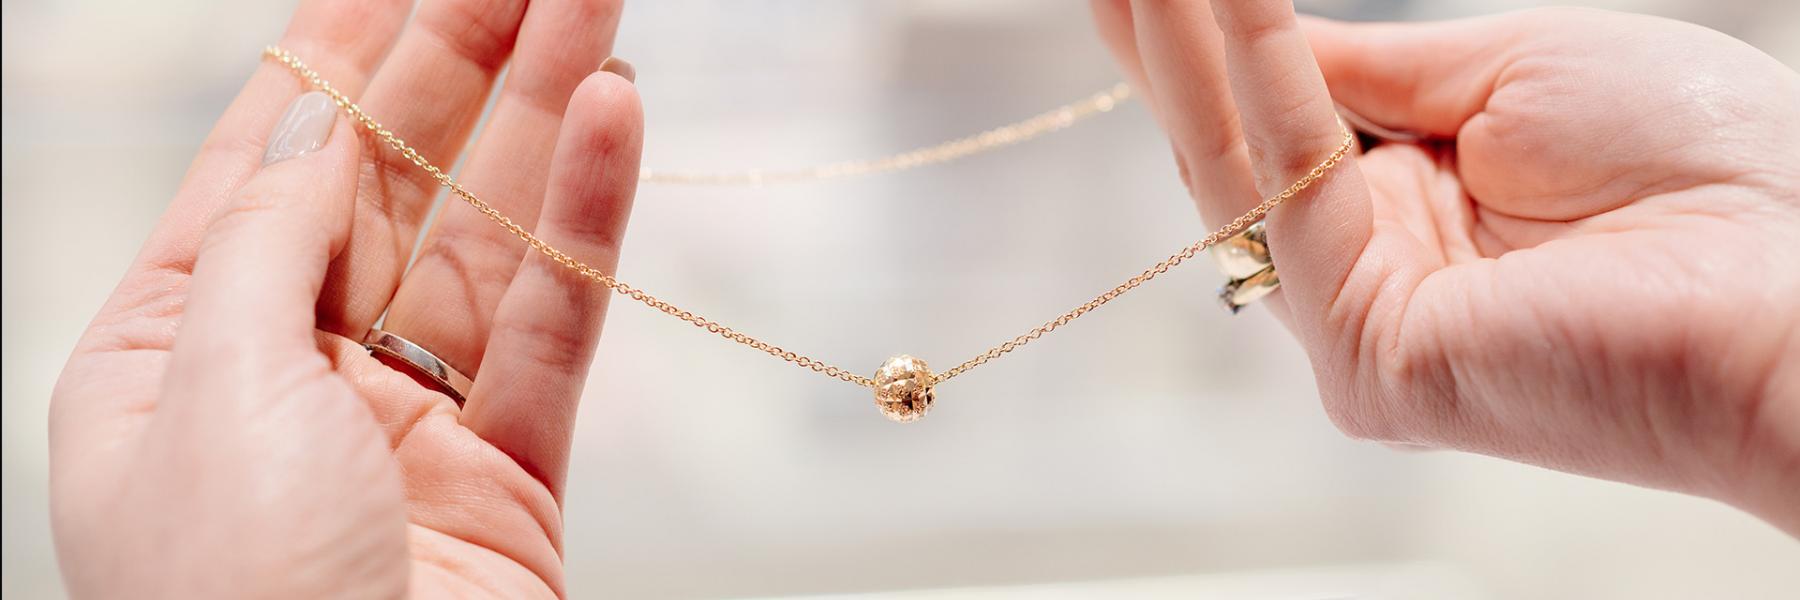 النجمة الأمريكية "كريستين كافياري" تختار مصممة مجوهرات سعودية لتكمل إطلالتها في حفل الأوسكار 2020